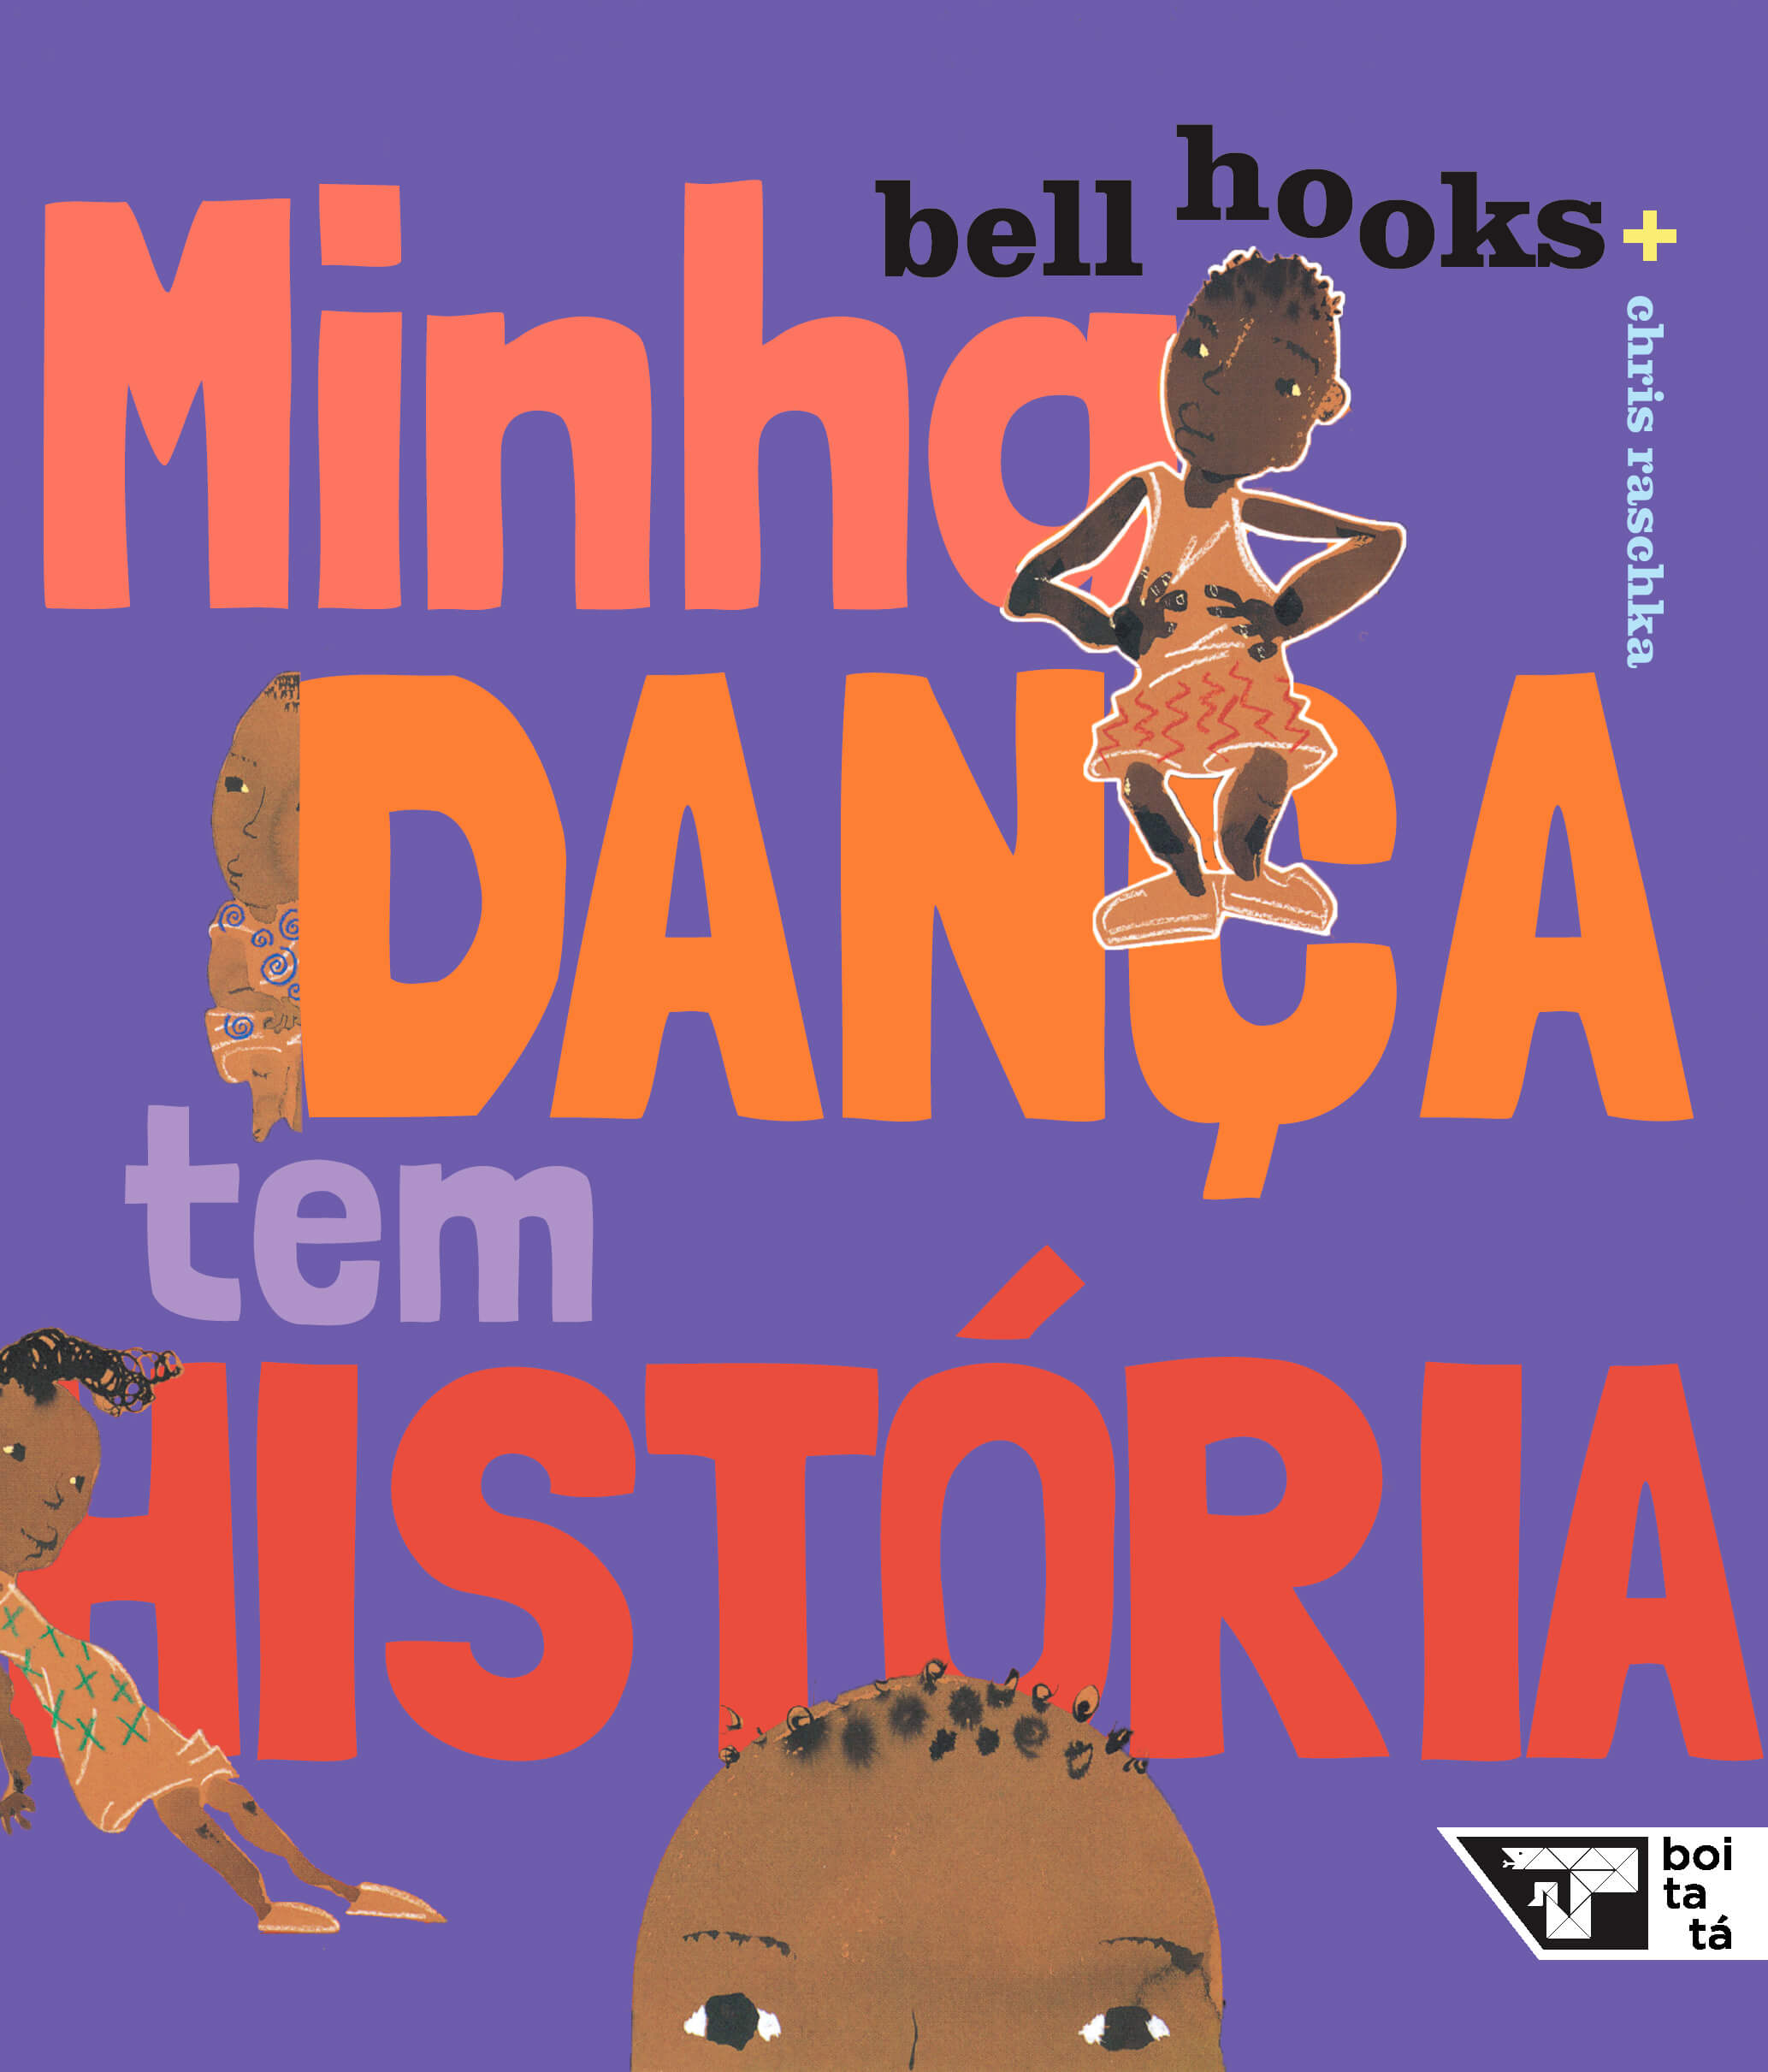  Capa do livro "Minha dança tem história”, de bell hooks e Chris Raschka